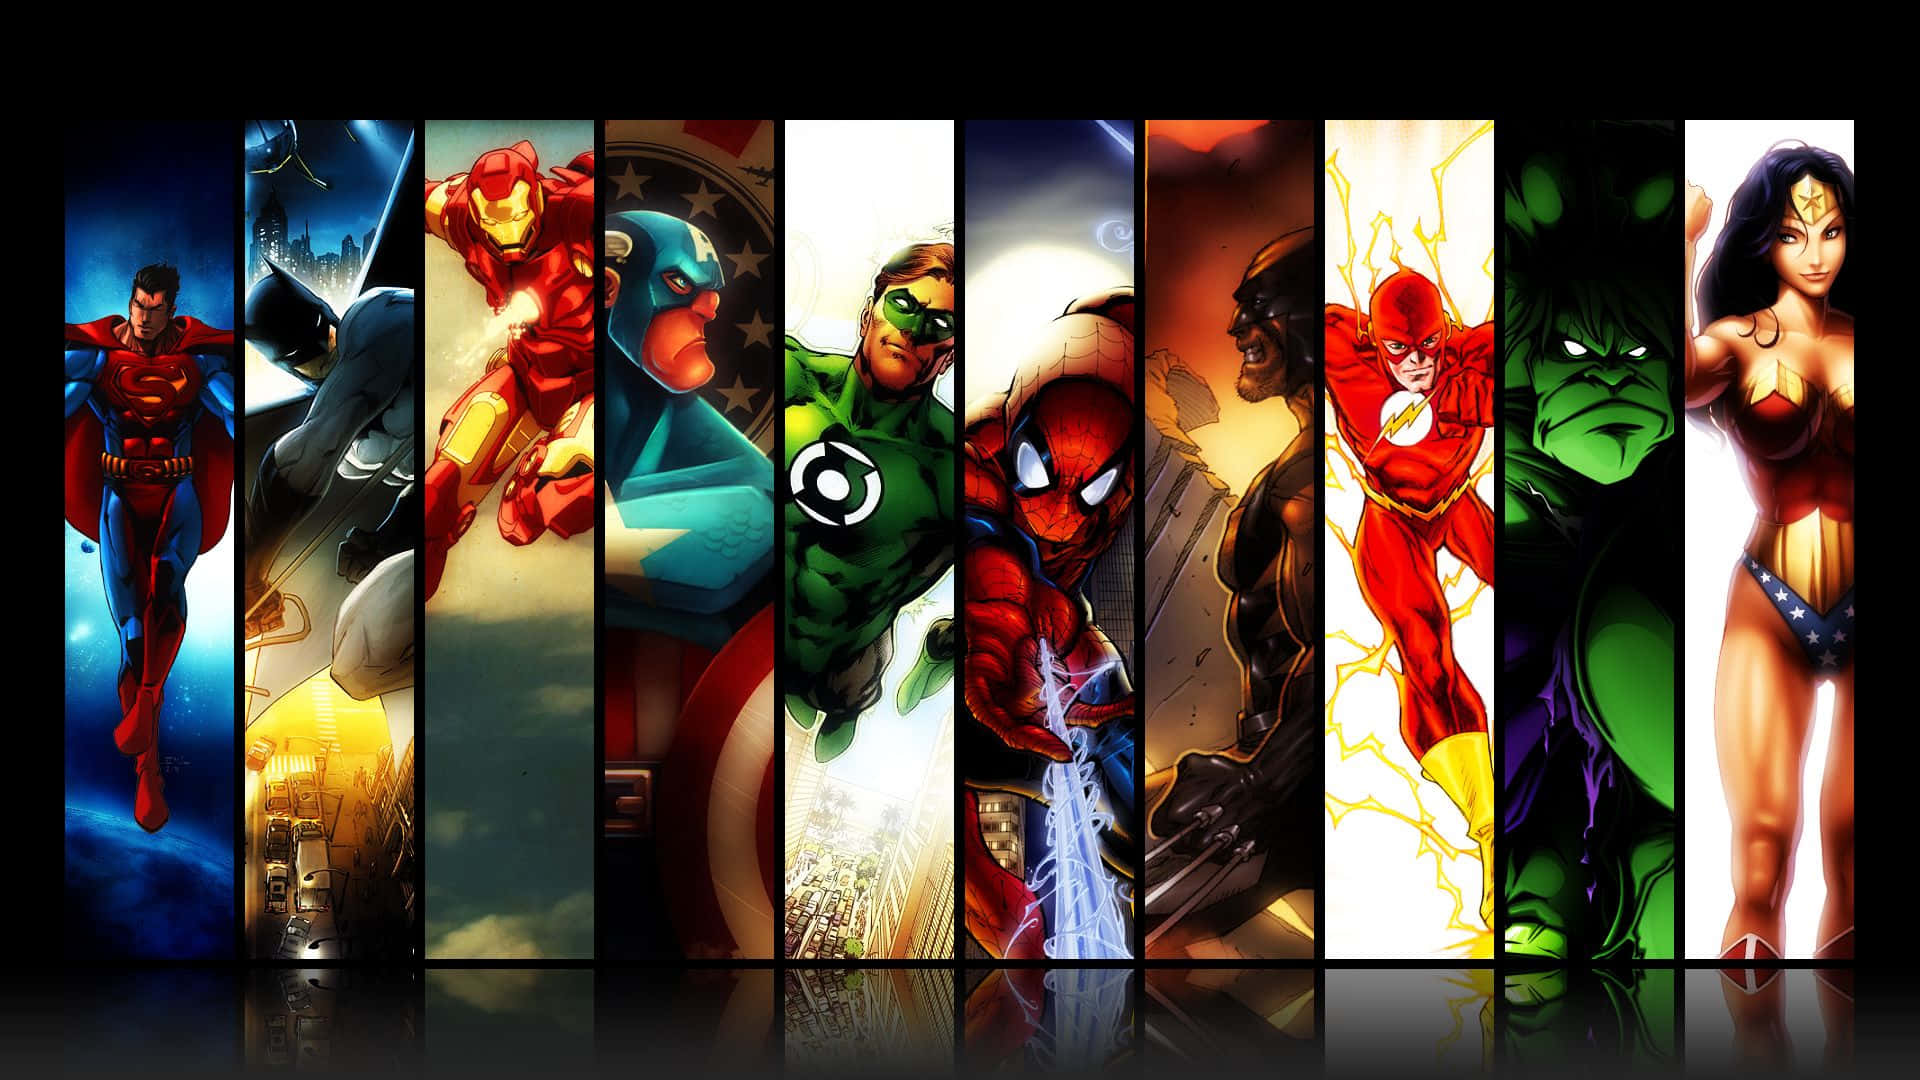 avengers vs justice league wallpaper